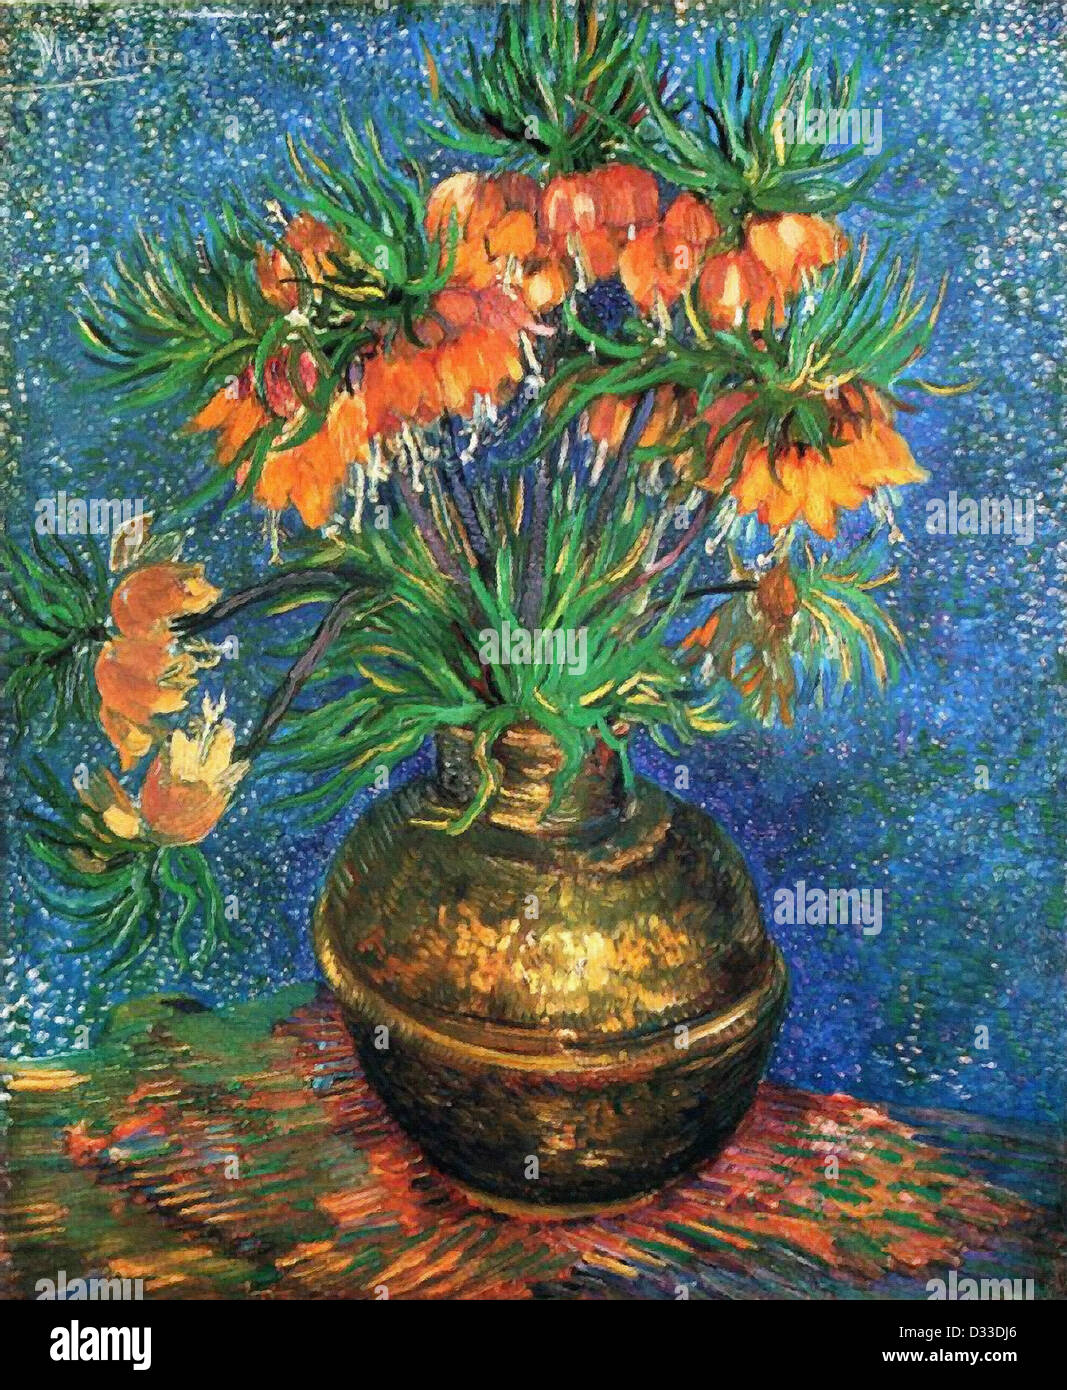 Vincent van Gogh: Fritillaries en un jarrón de cobre. 1887. Óleo sobre lienzo. Musée d'Orsay, París, Francia. Posimpresionismo. Foto de stock